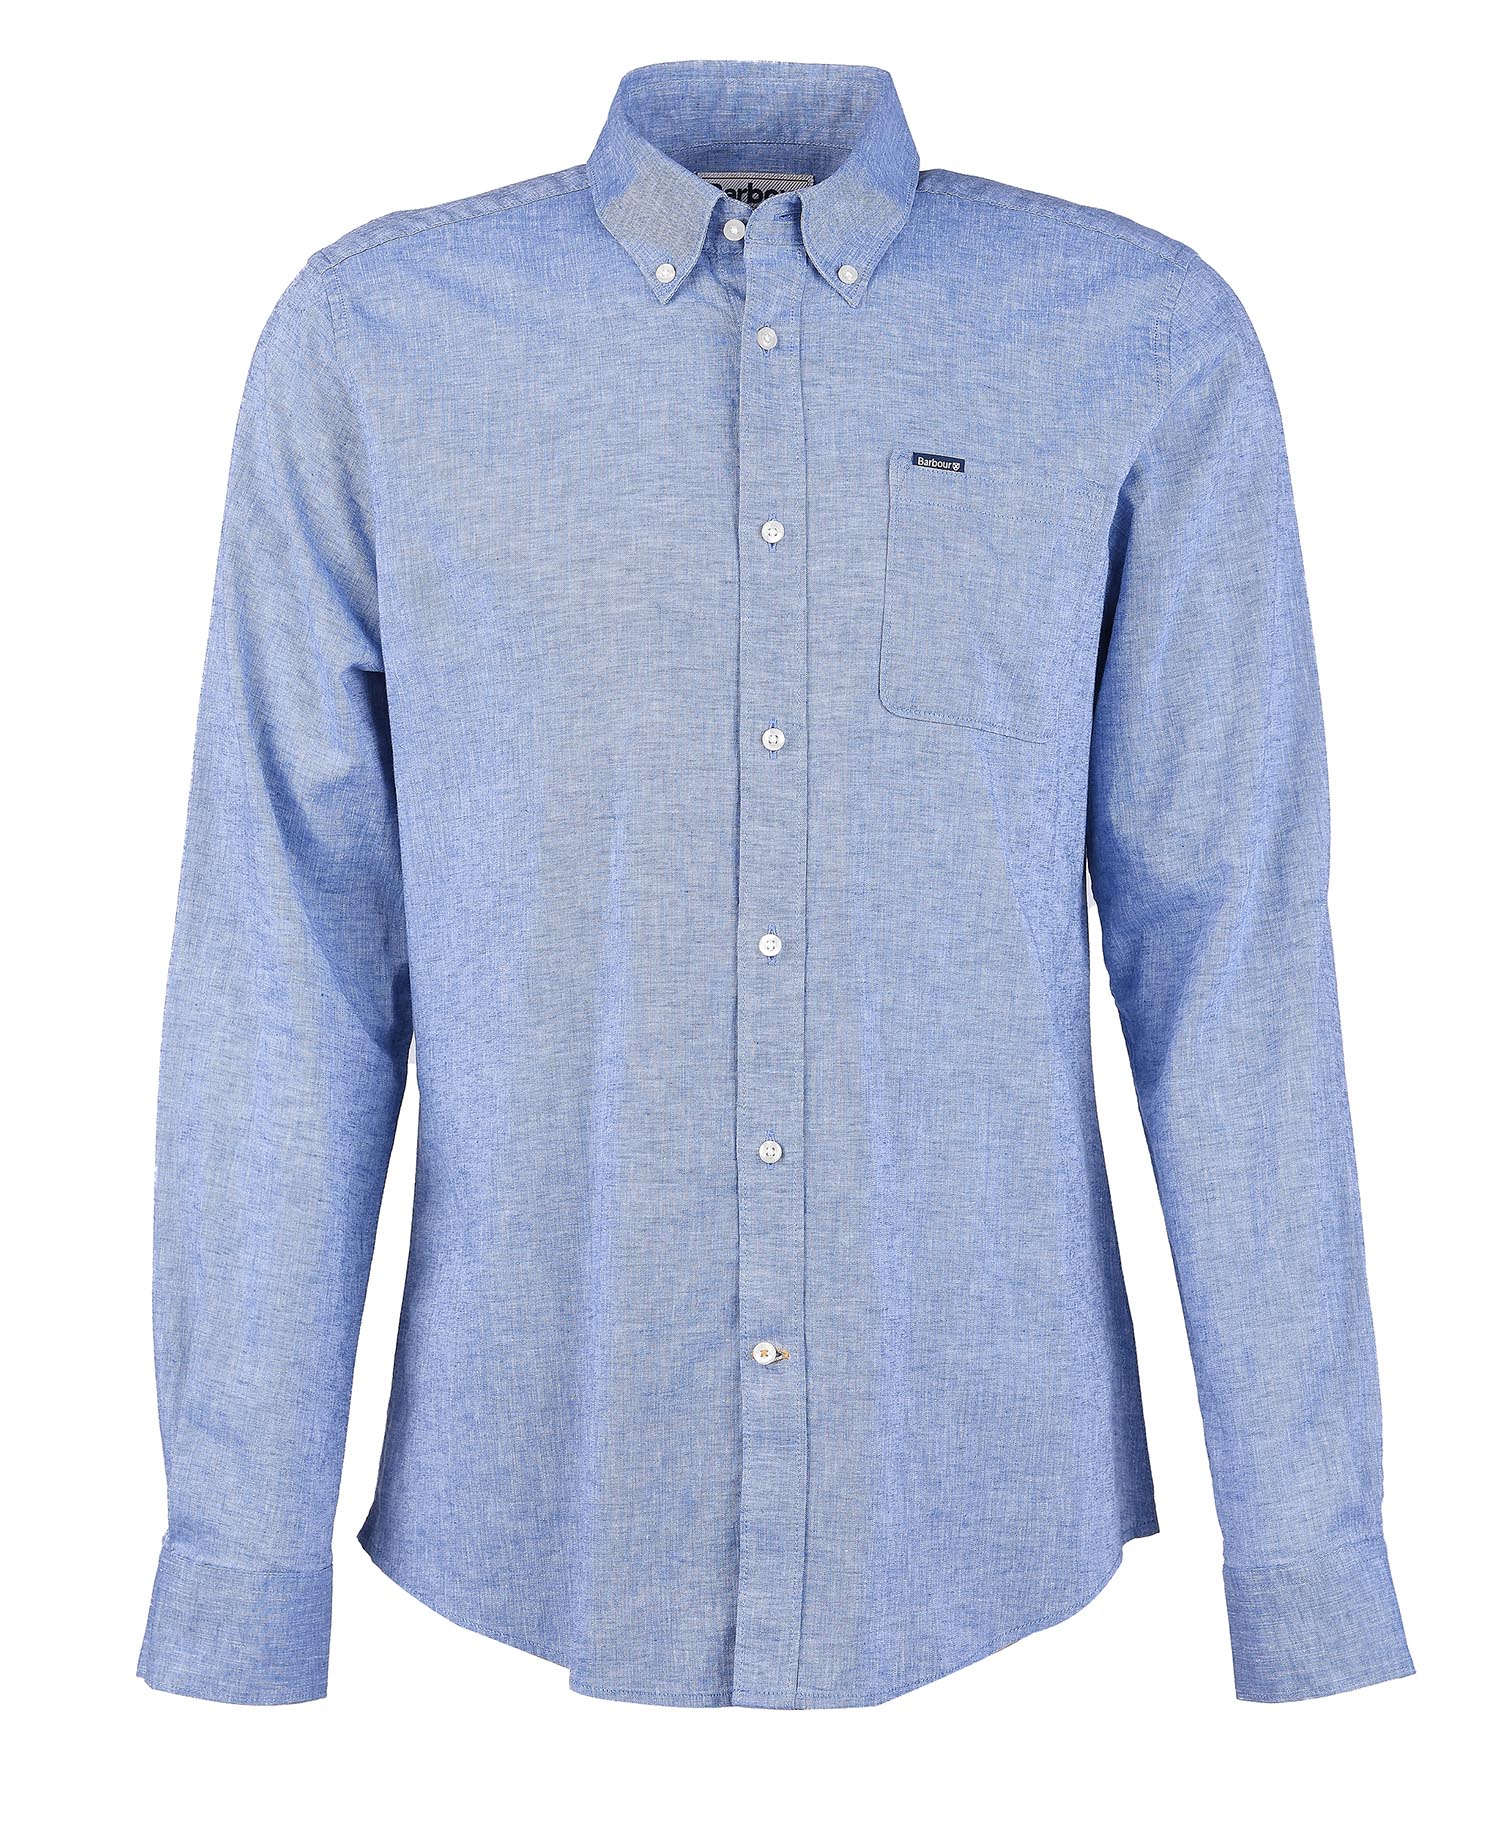 Nelson Tailored Shirt - Blue